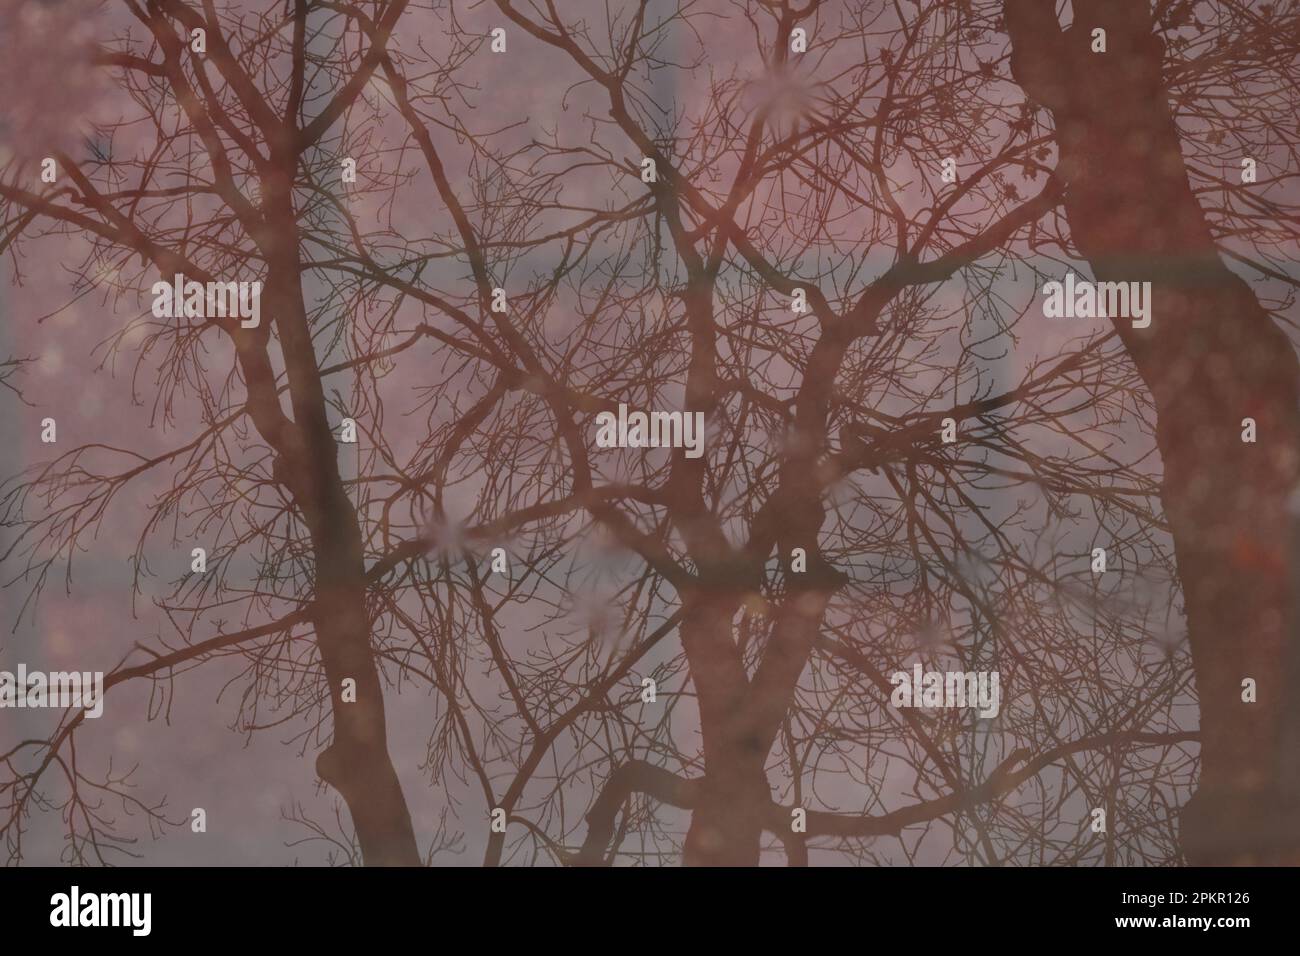 Umrisse von Bäumen, die in einer Pfütze in Burgundertönen reflektiert werden. Stockfoto